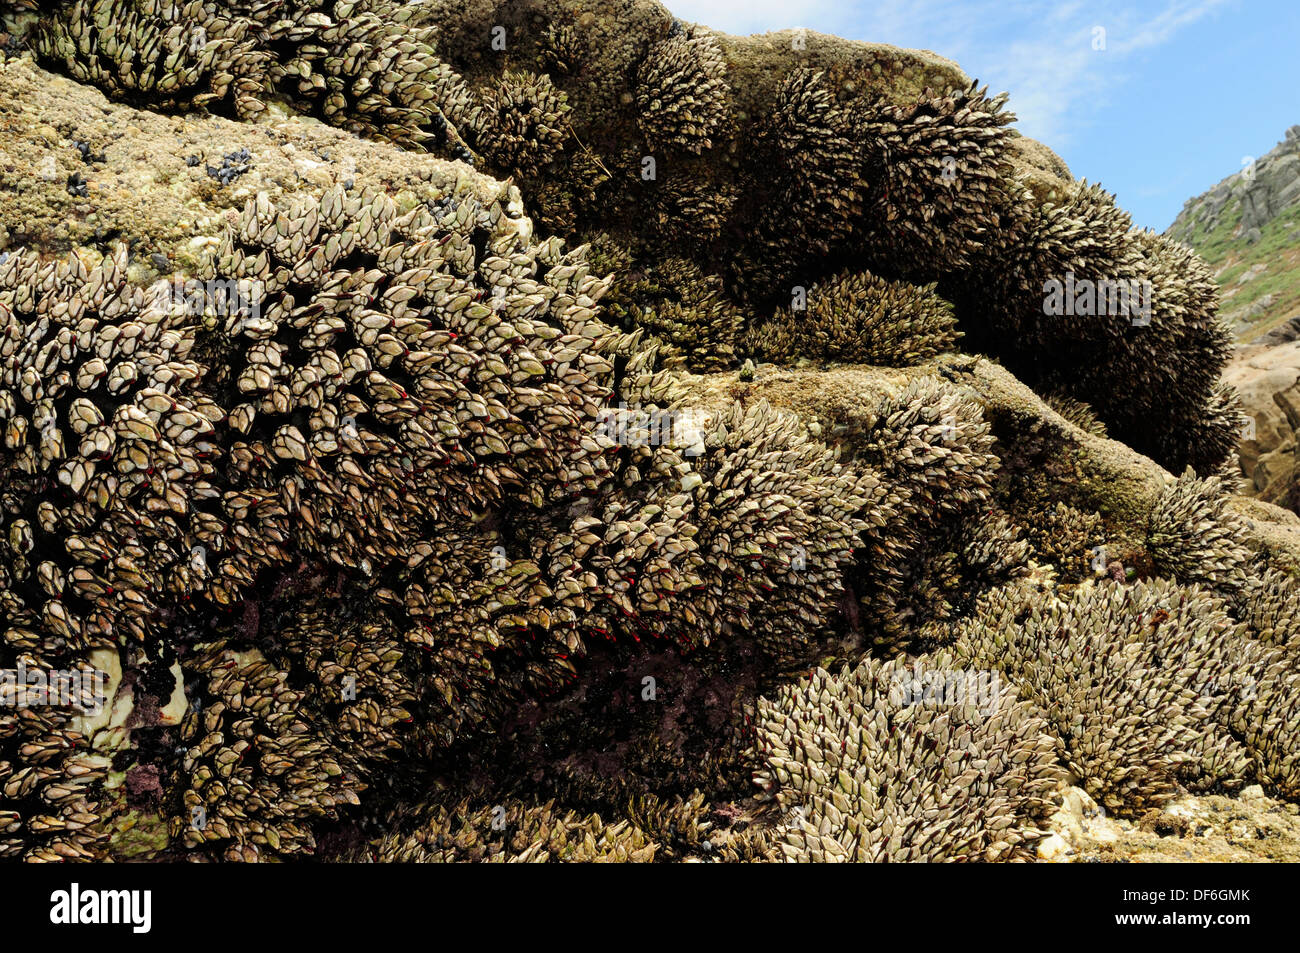 Groupe de goose barnacles (Pollicipes pollicipes) couvrant les zones côtières rocks Banque D'Images